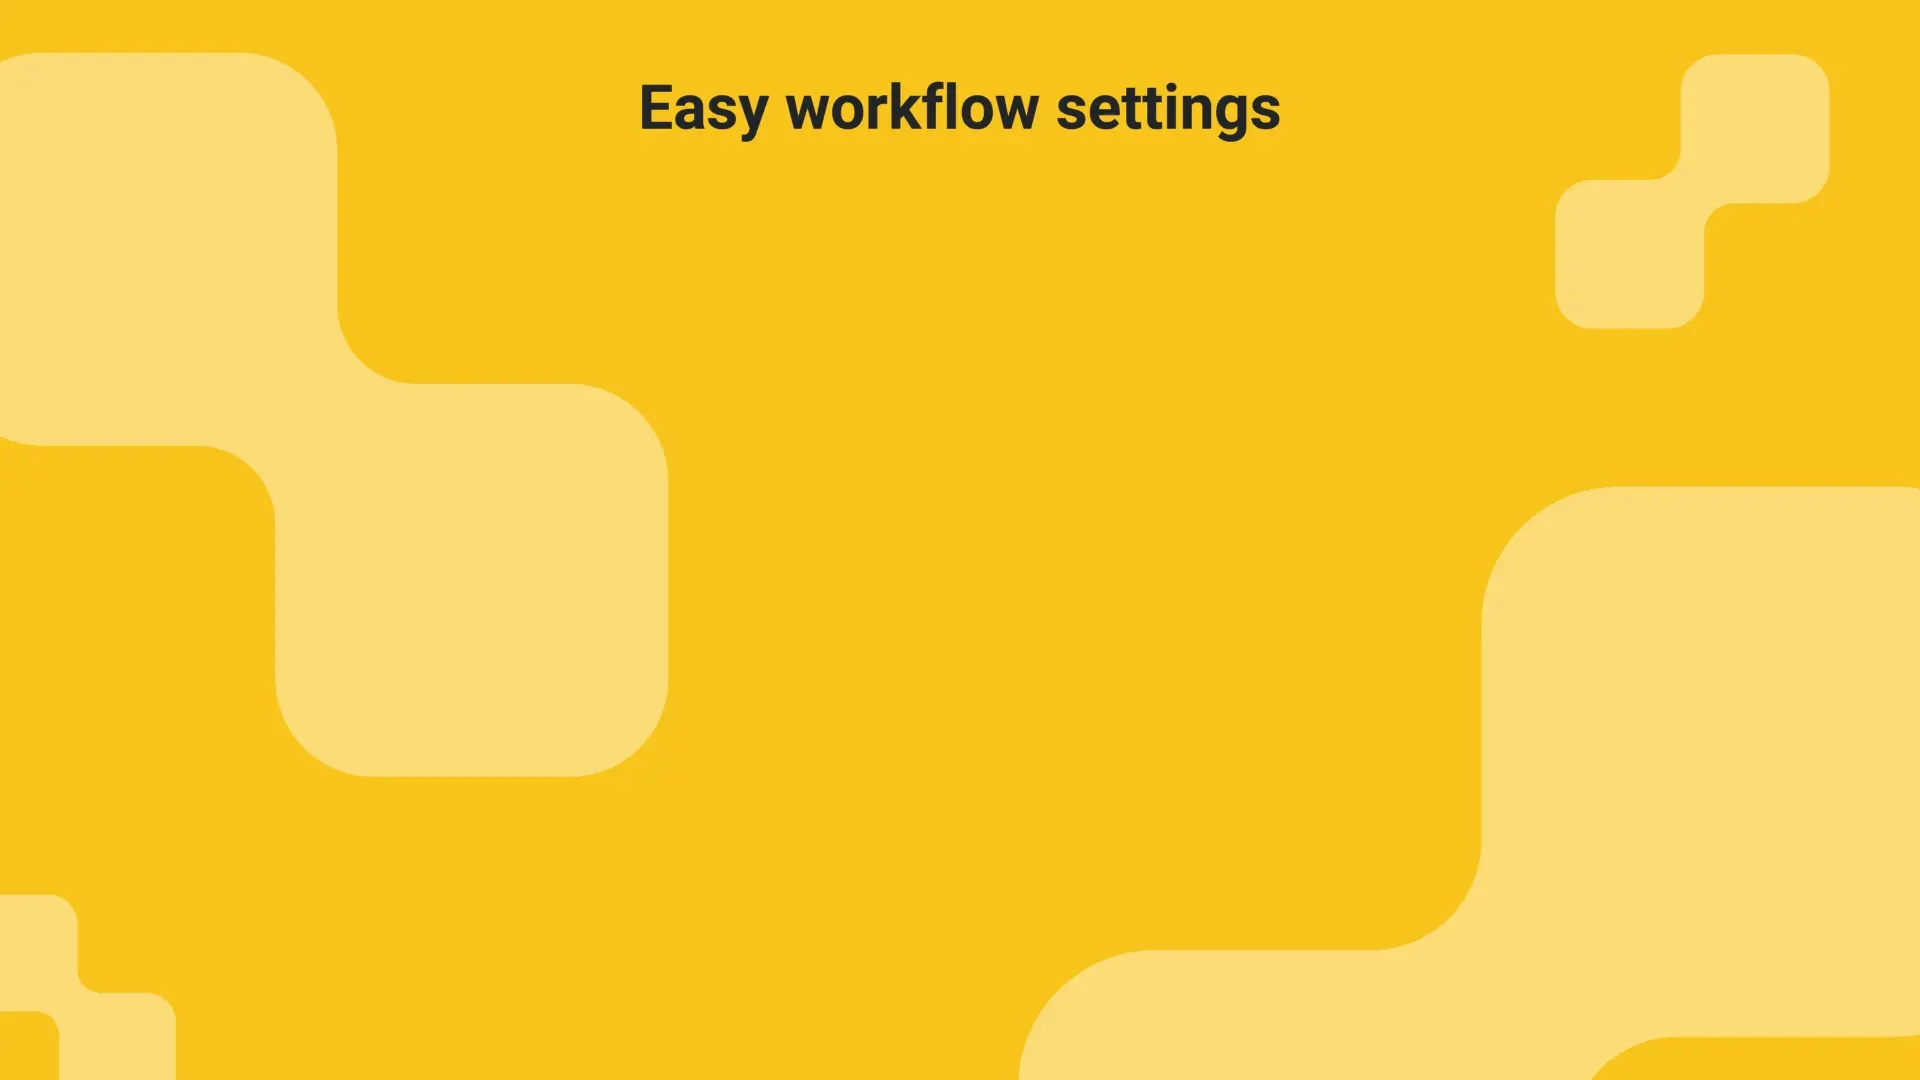 Workflow settings